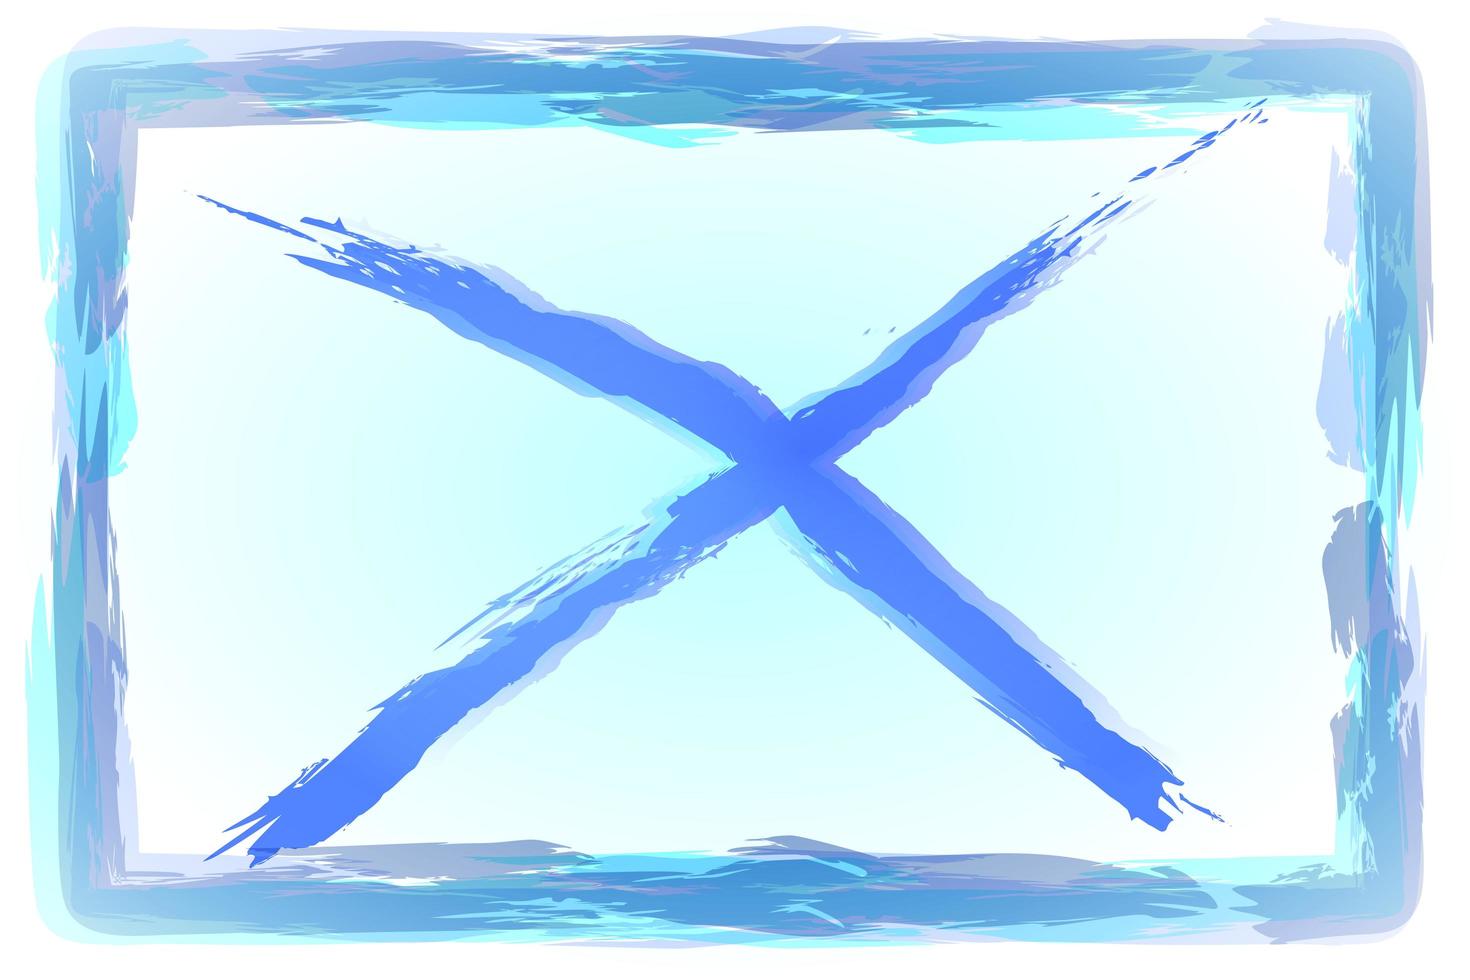 aquarela azul do símbolo de cruz, abstrato foto